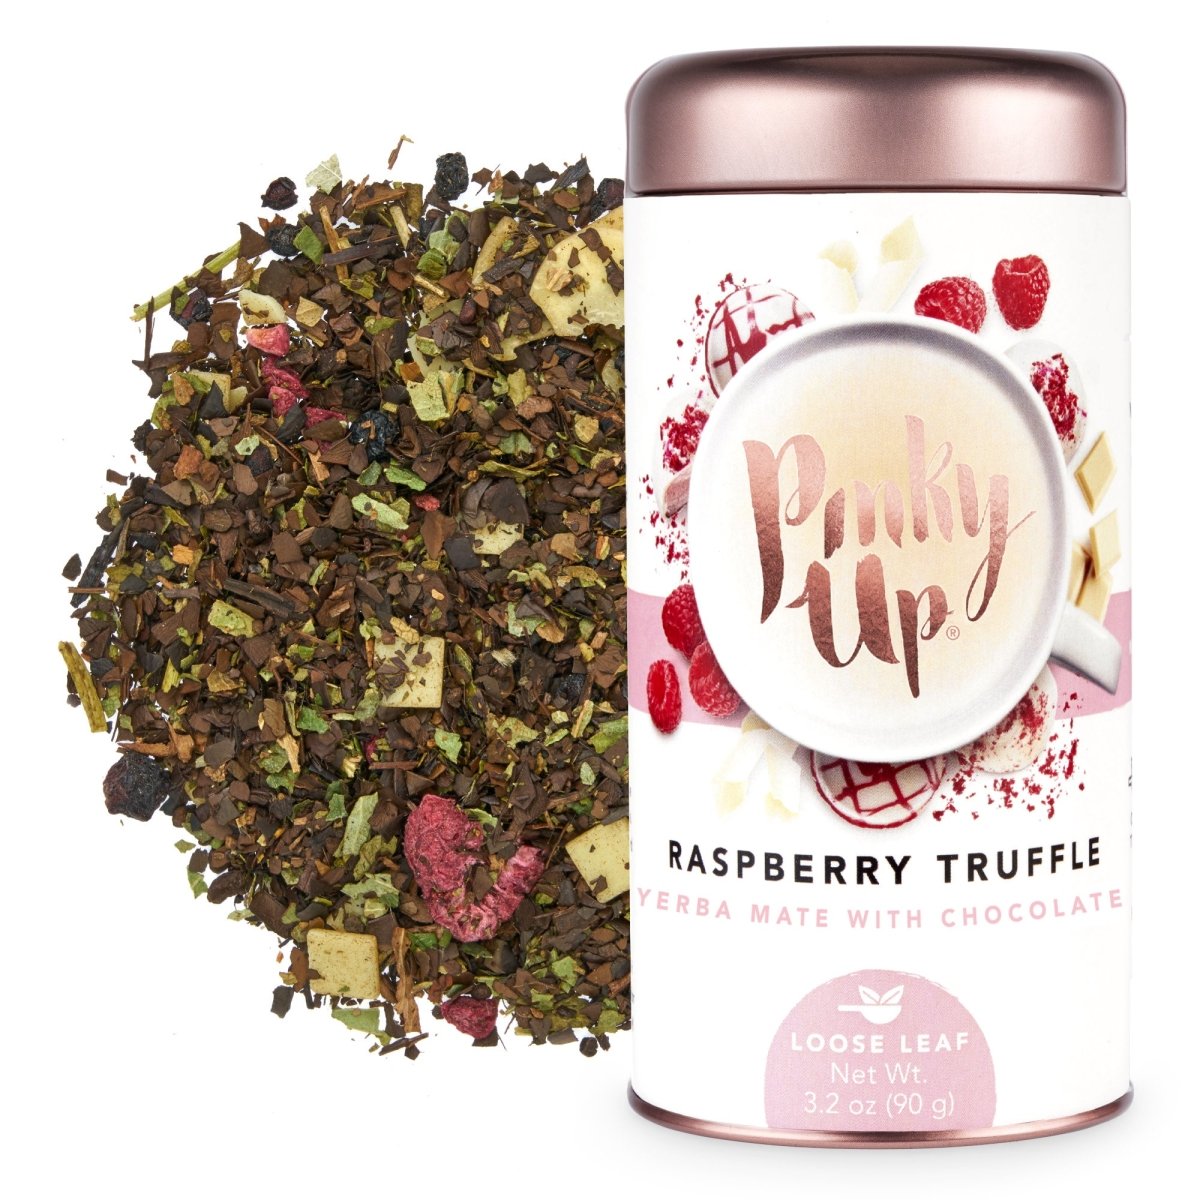 Pinky Up Raspberry Truffle Loose Leaf Tea Tins - lily & onyx